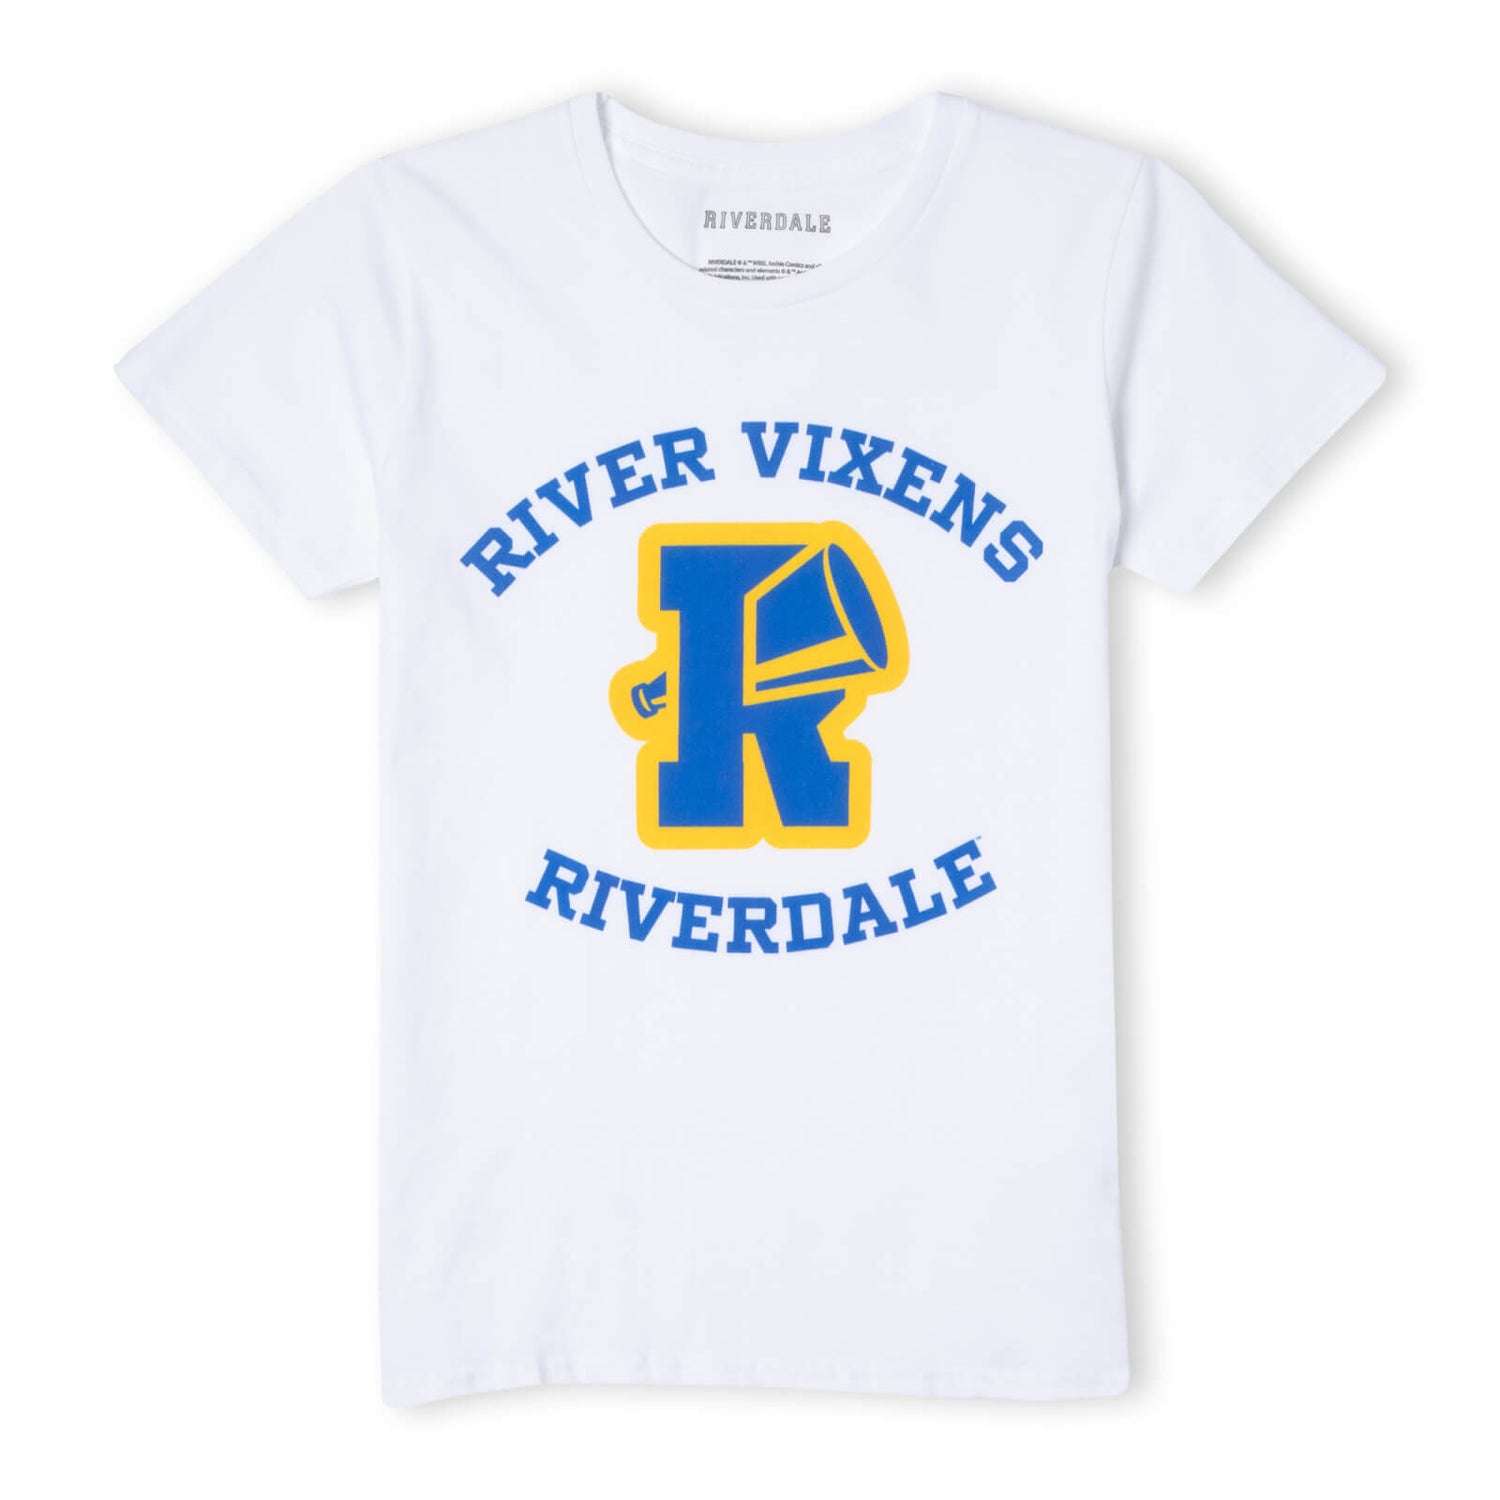 Riverdale River Vixens Women's T-Shirt - White